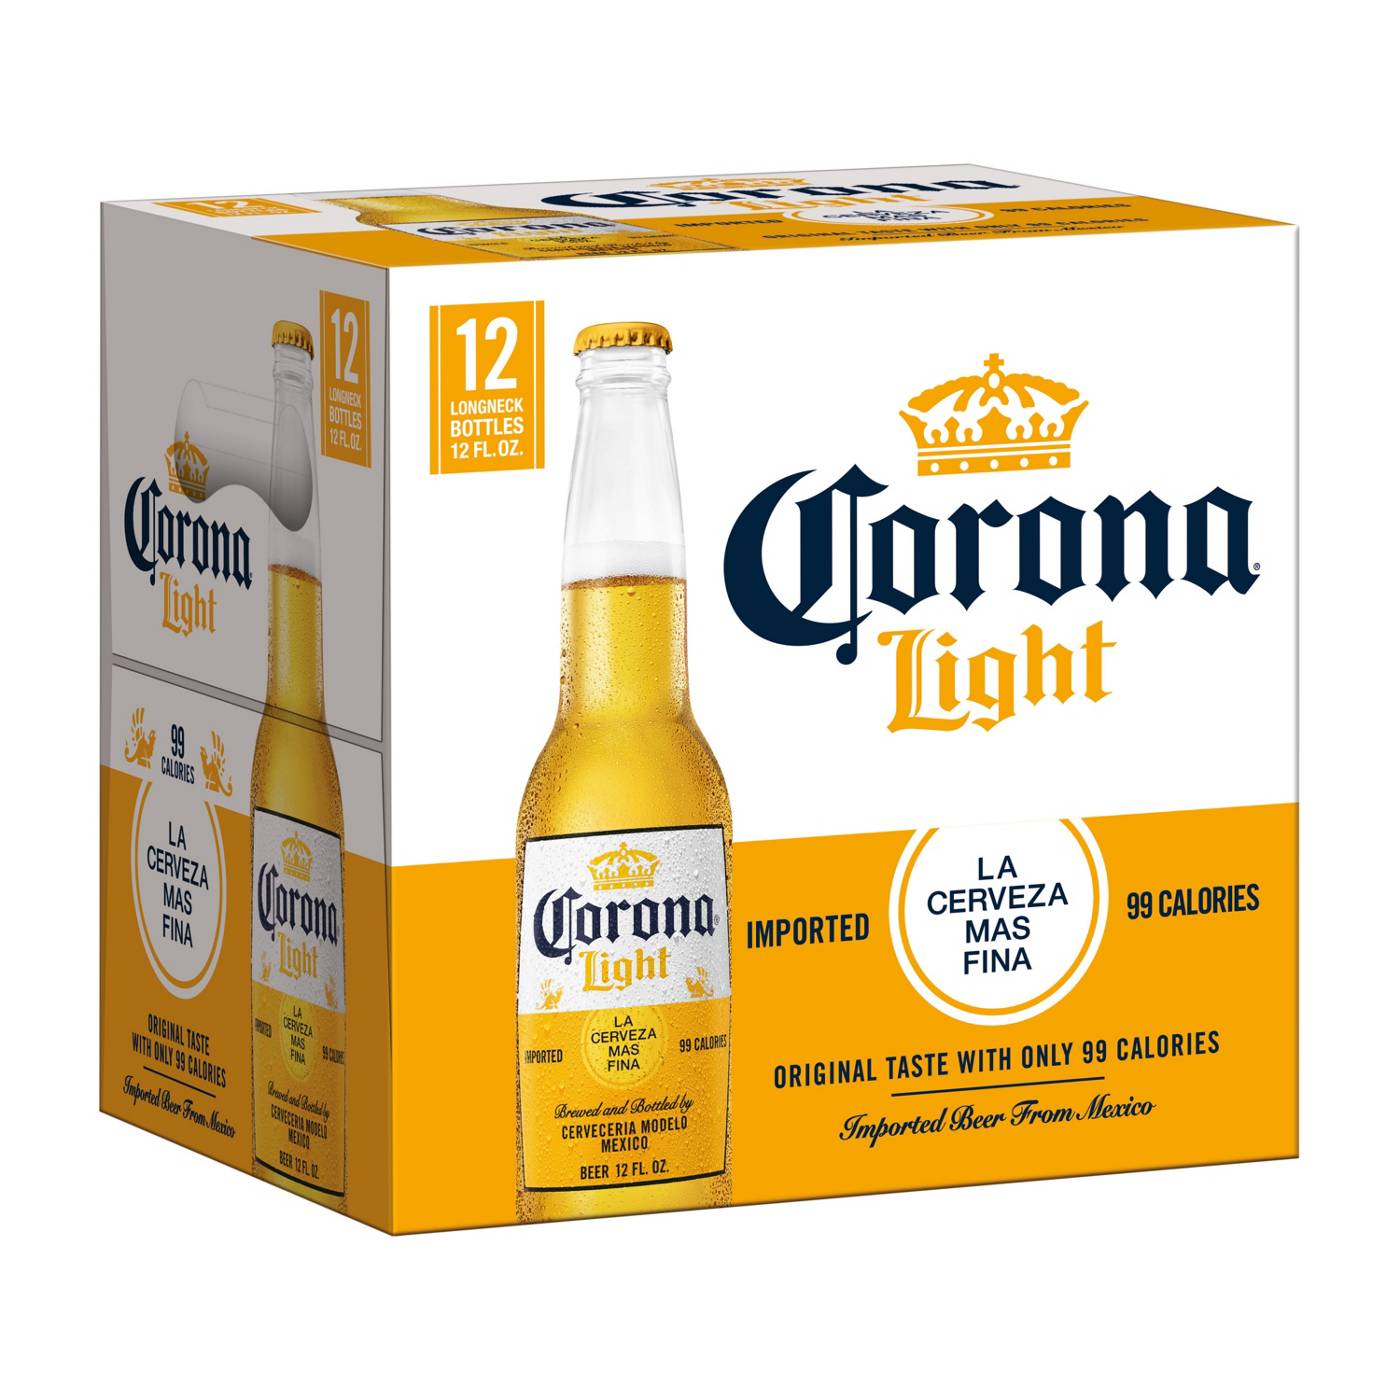 Corona Light Mexican Lager Import Light Beer 12 oz Bottles, 12 pk; image 1 of 10